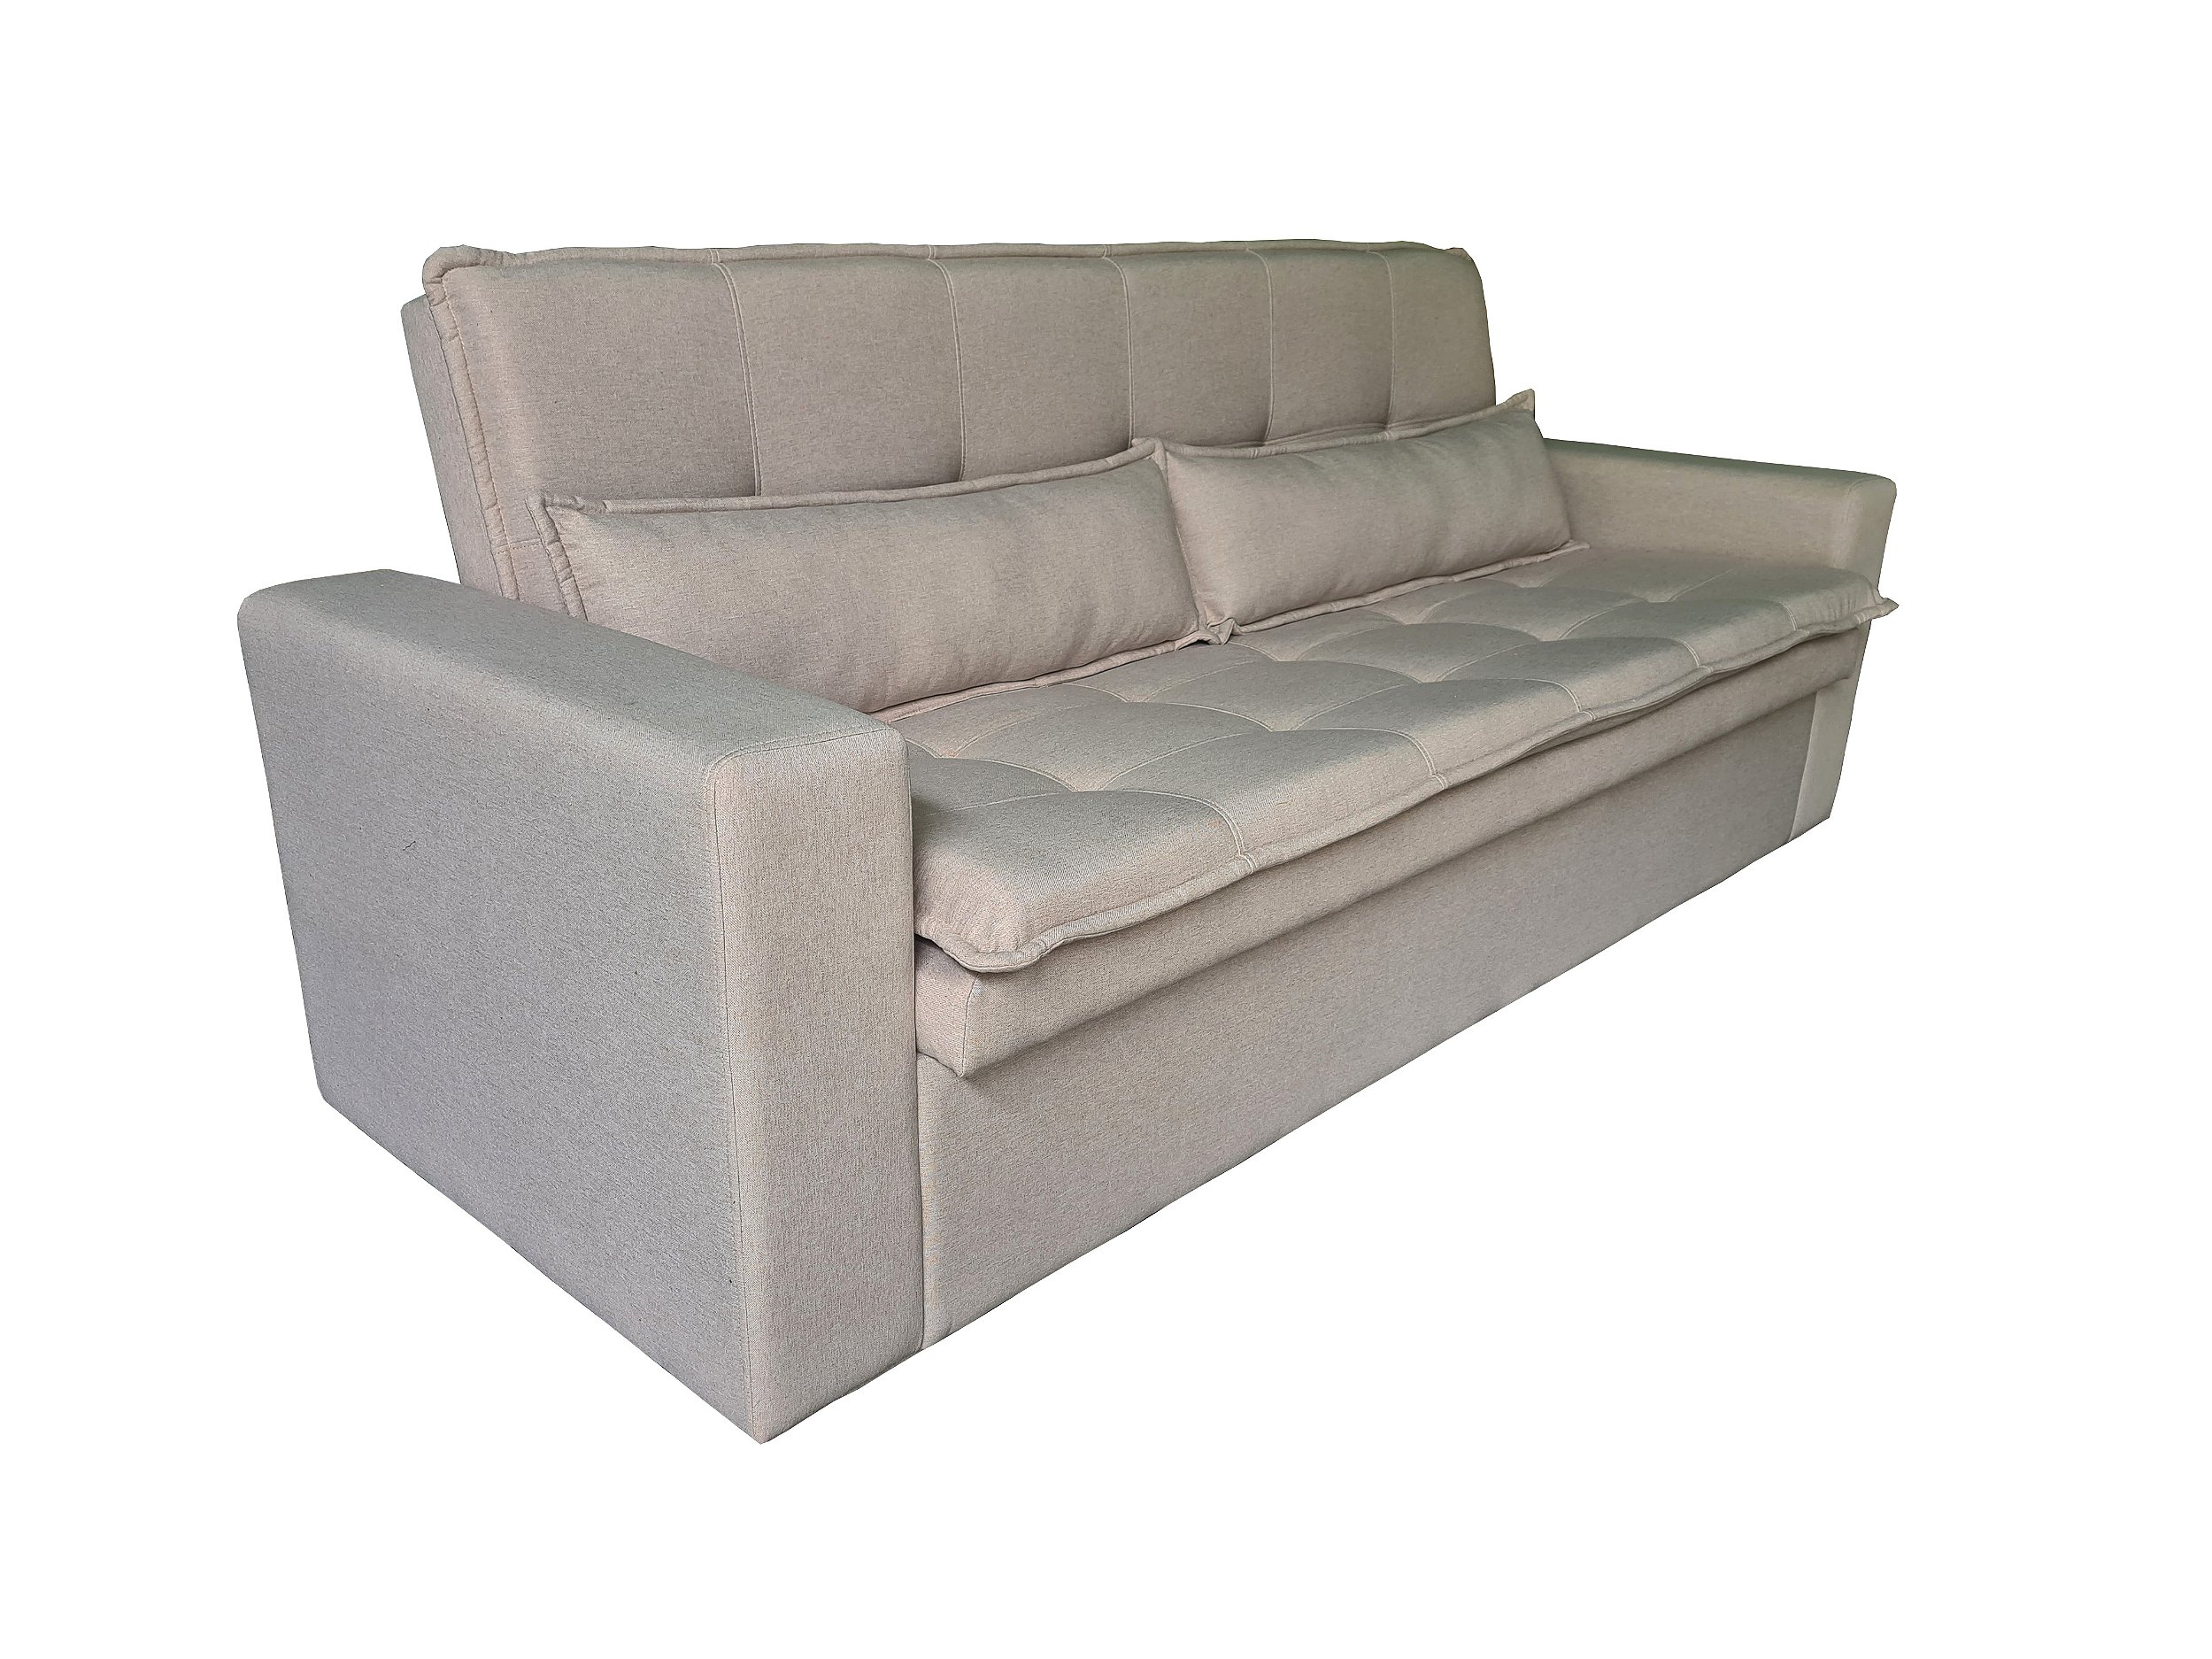 Sofa cama sob medida e personalizado - Lv Estofados